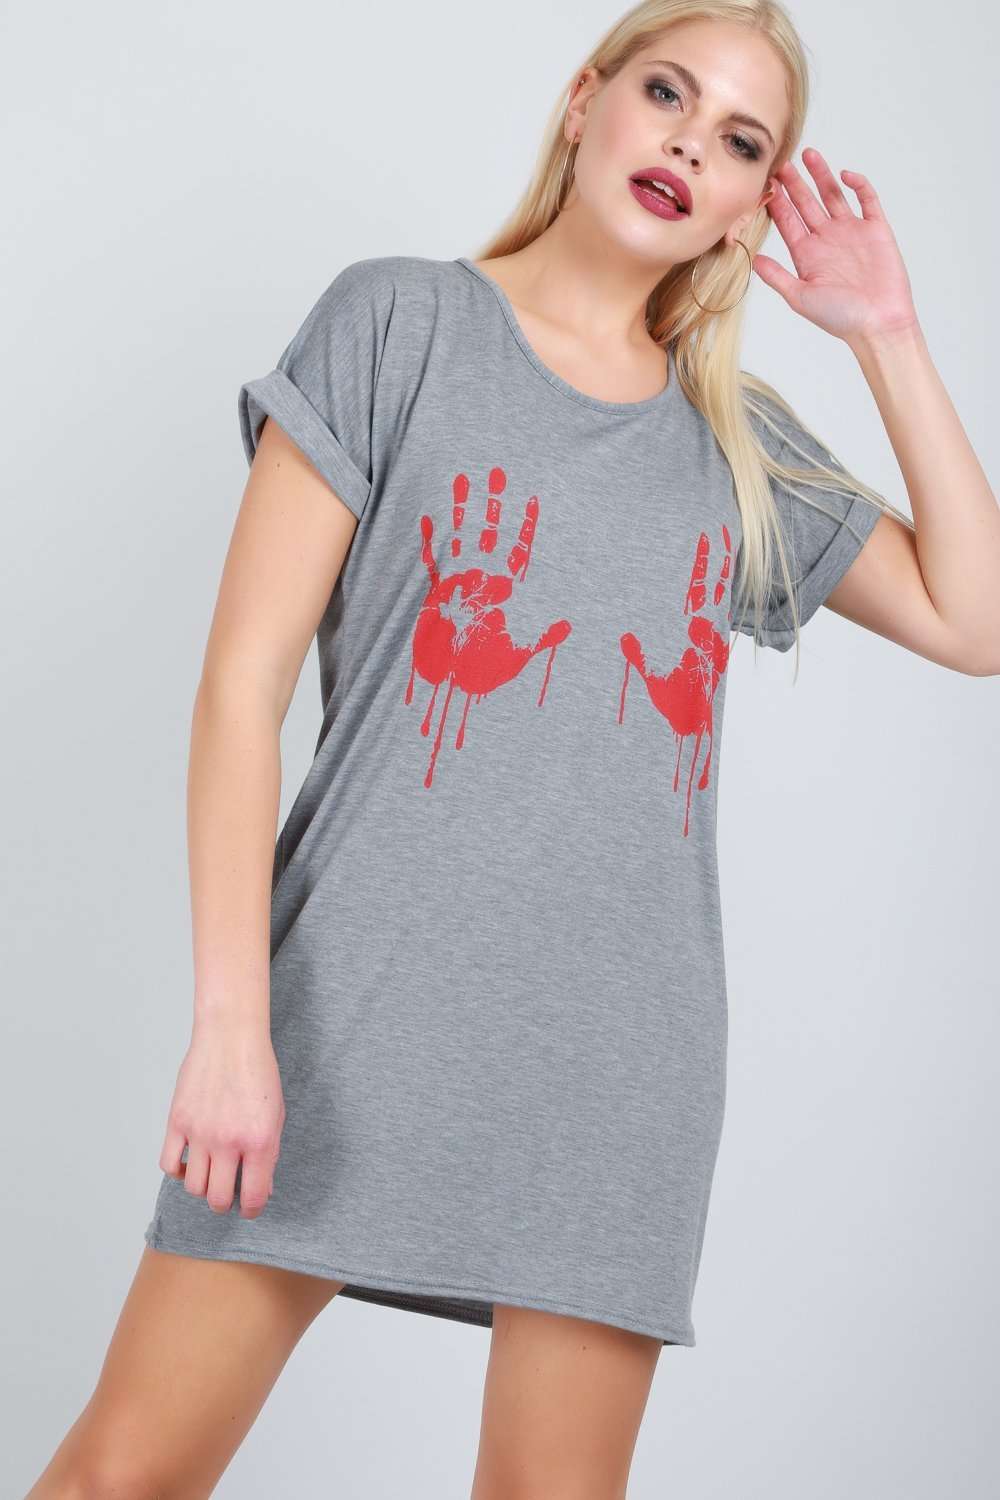 Long Line Halloween T-shirt Dress - bejealous-com